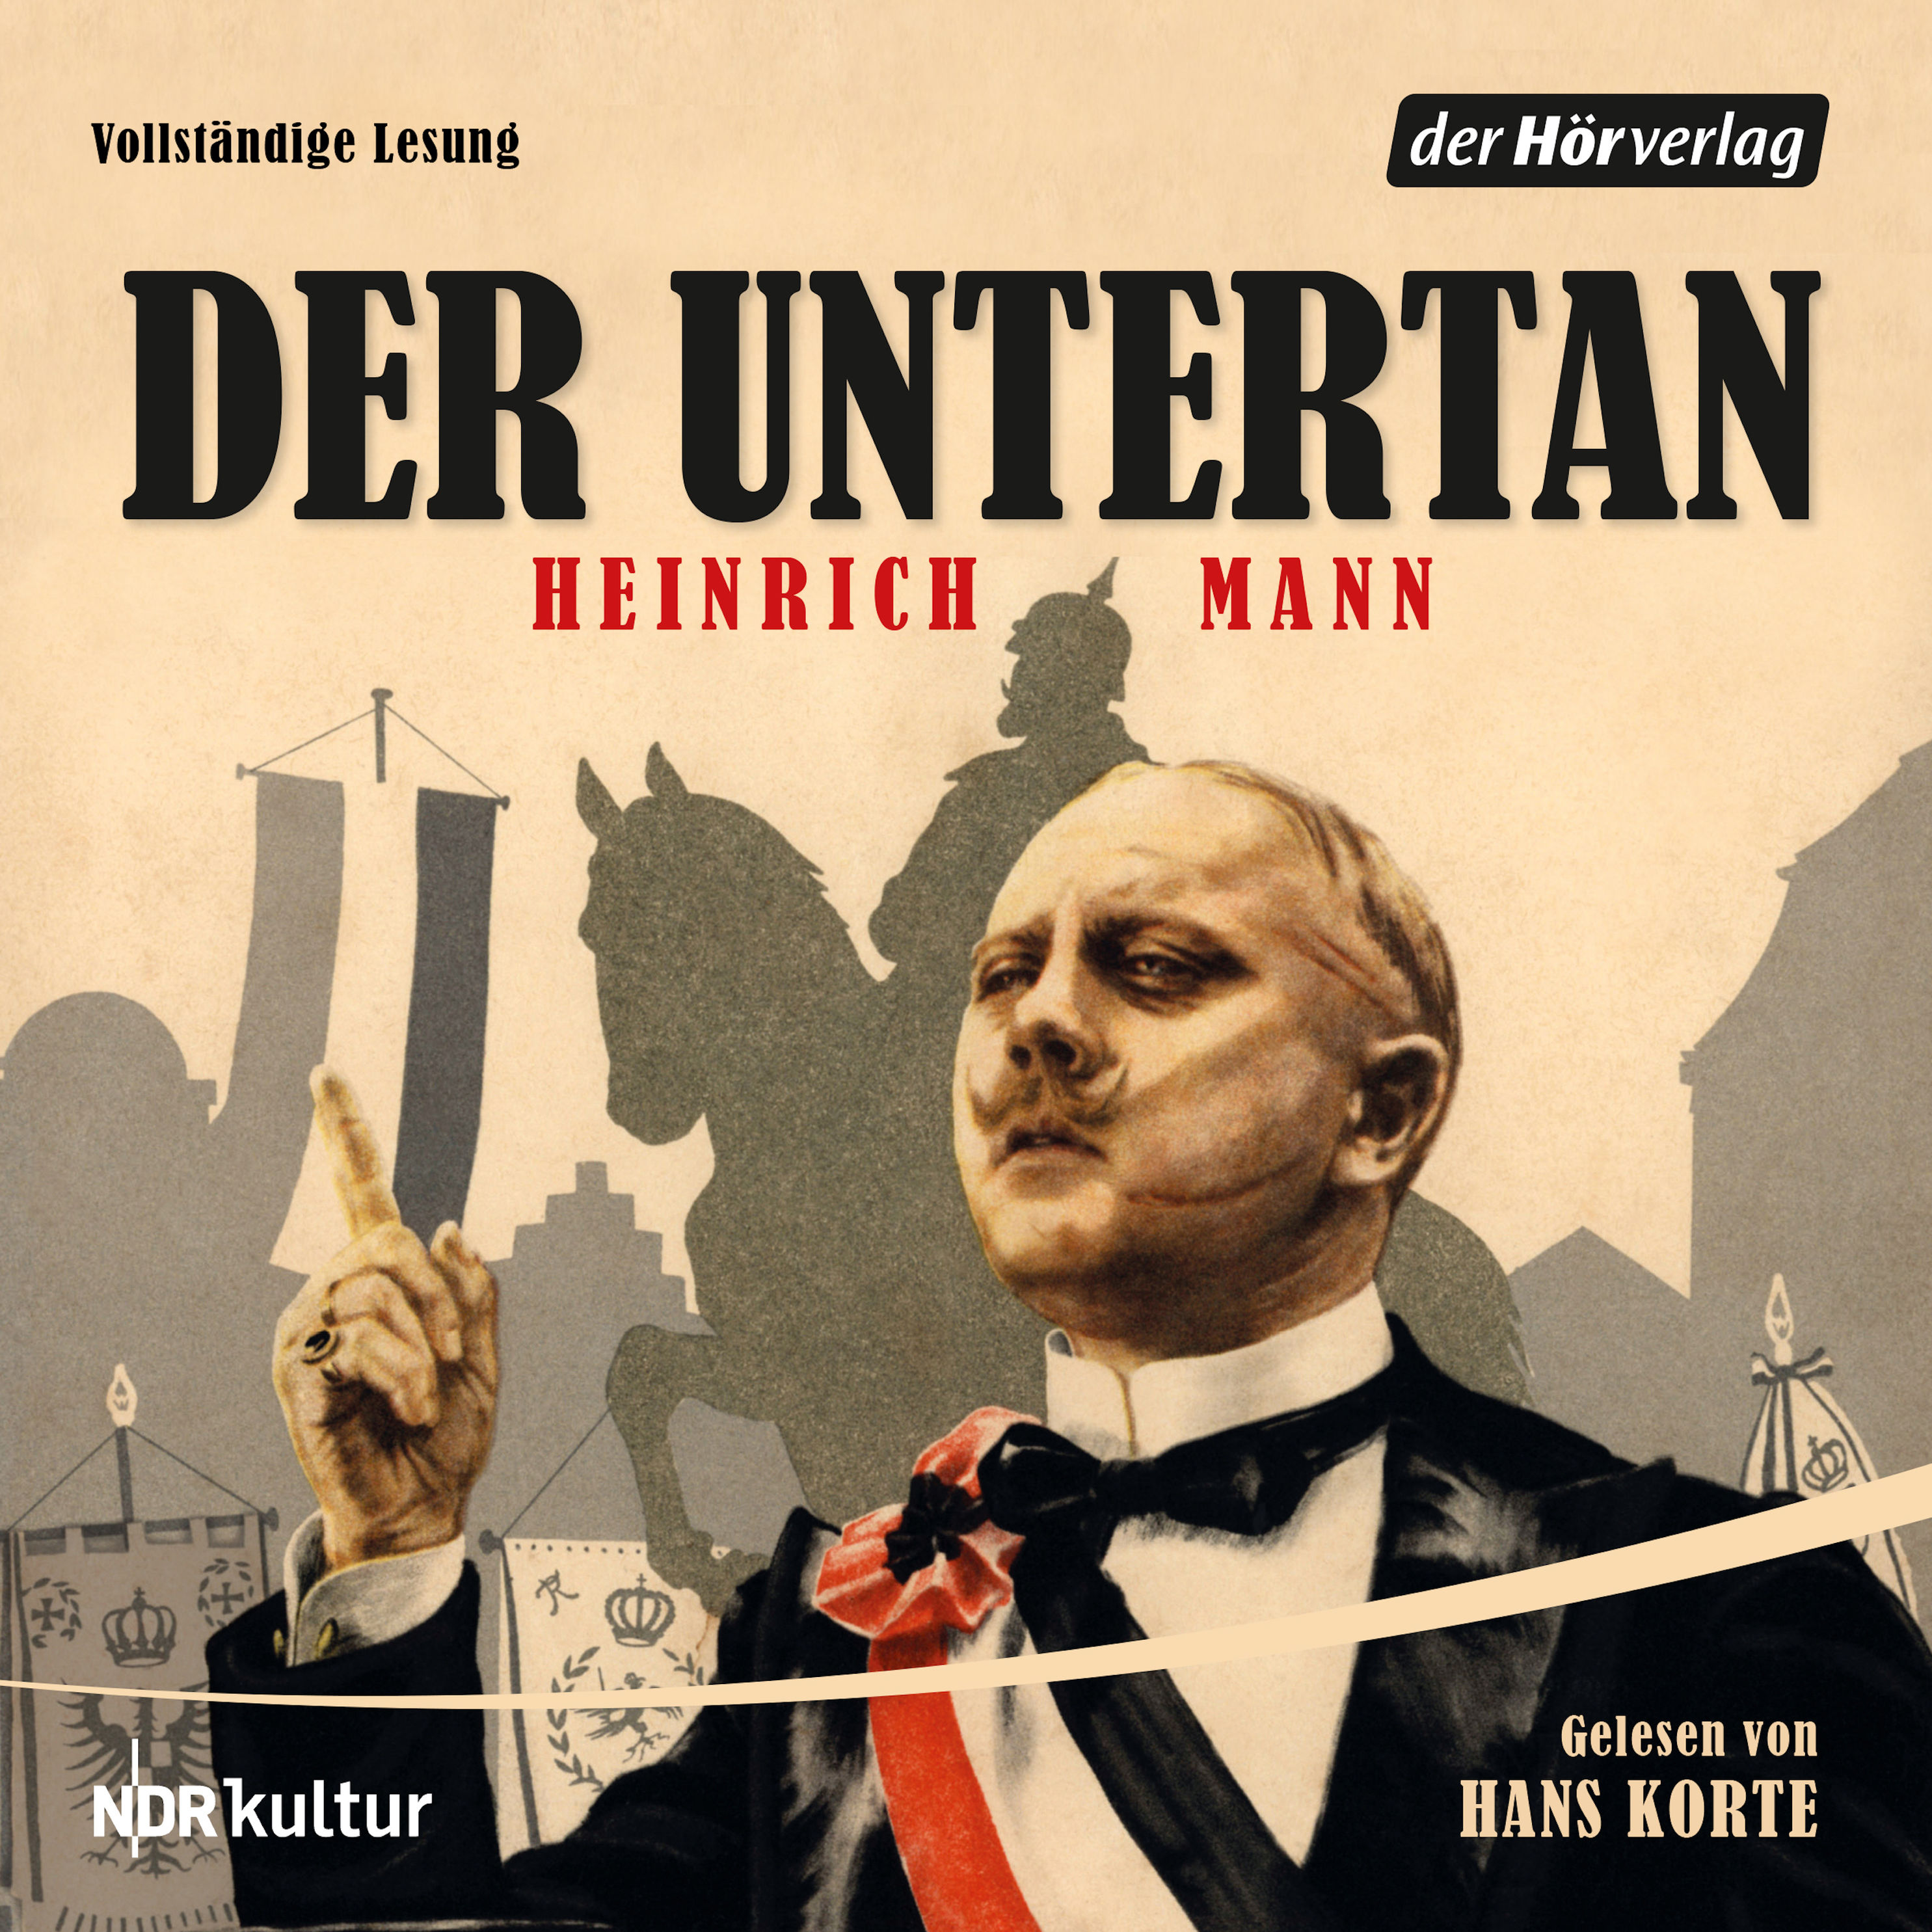 Der Untertan Hörbuch sicher downloaden - jetzt bei Weltbild.de!